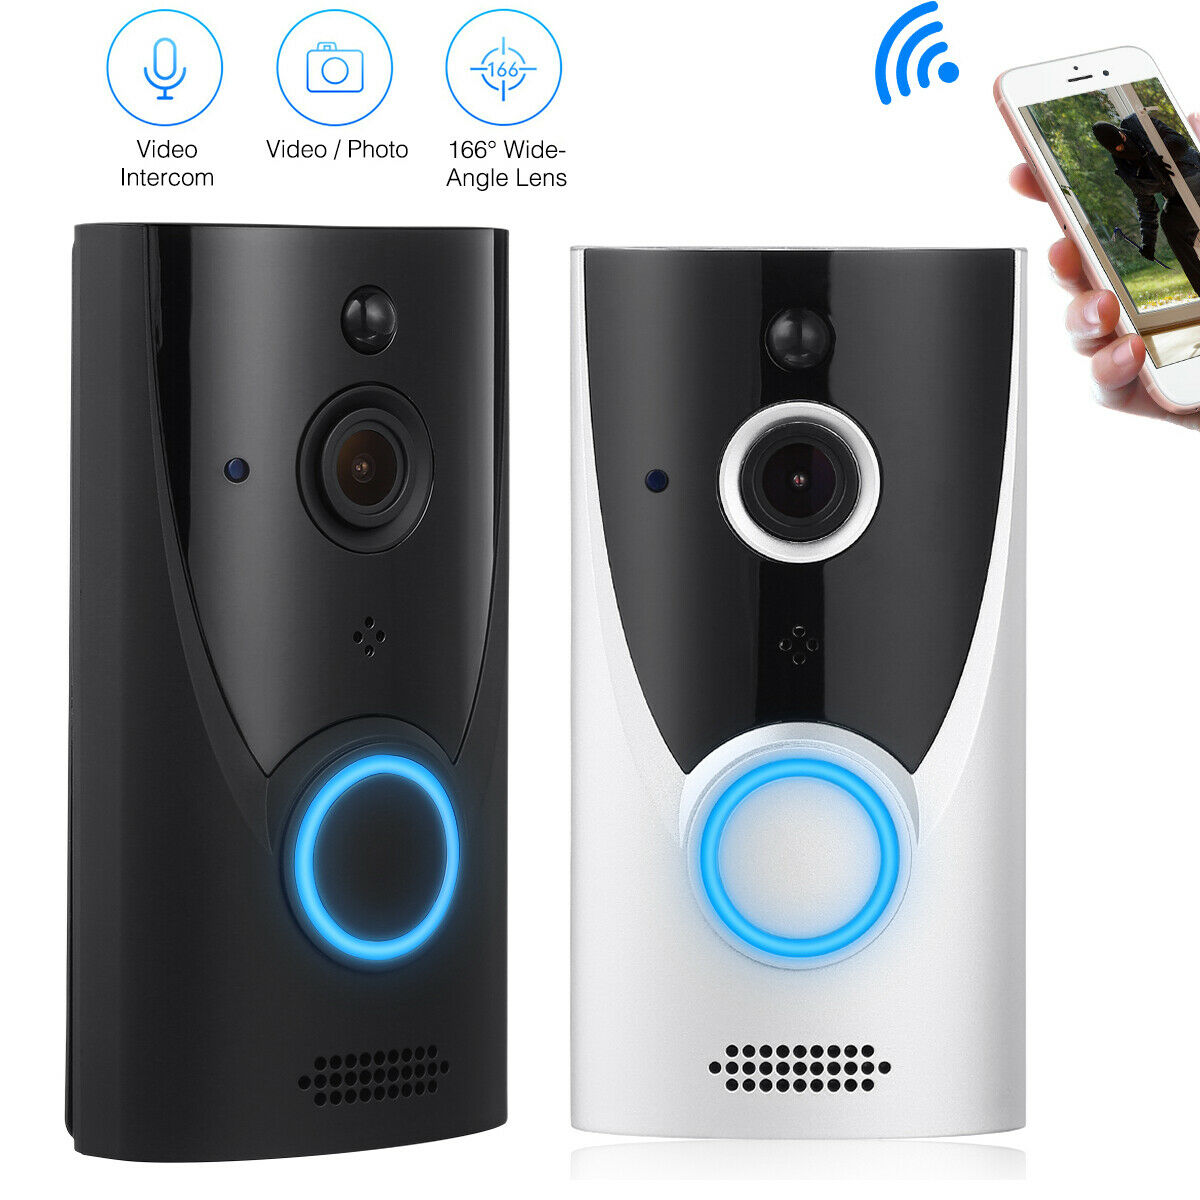 Two-way Talk Door Bell Wifi Wireless Hd Video Doorbell Smart Security Camera